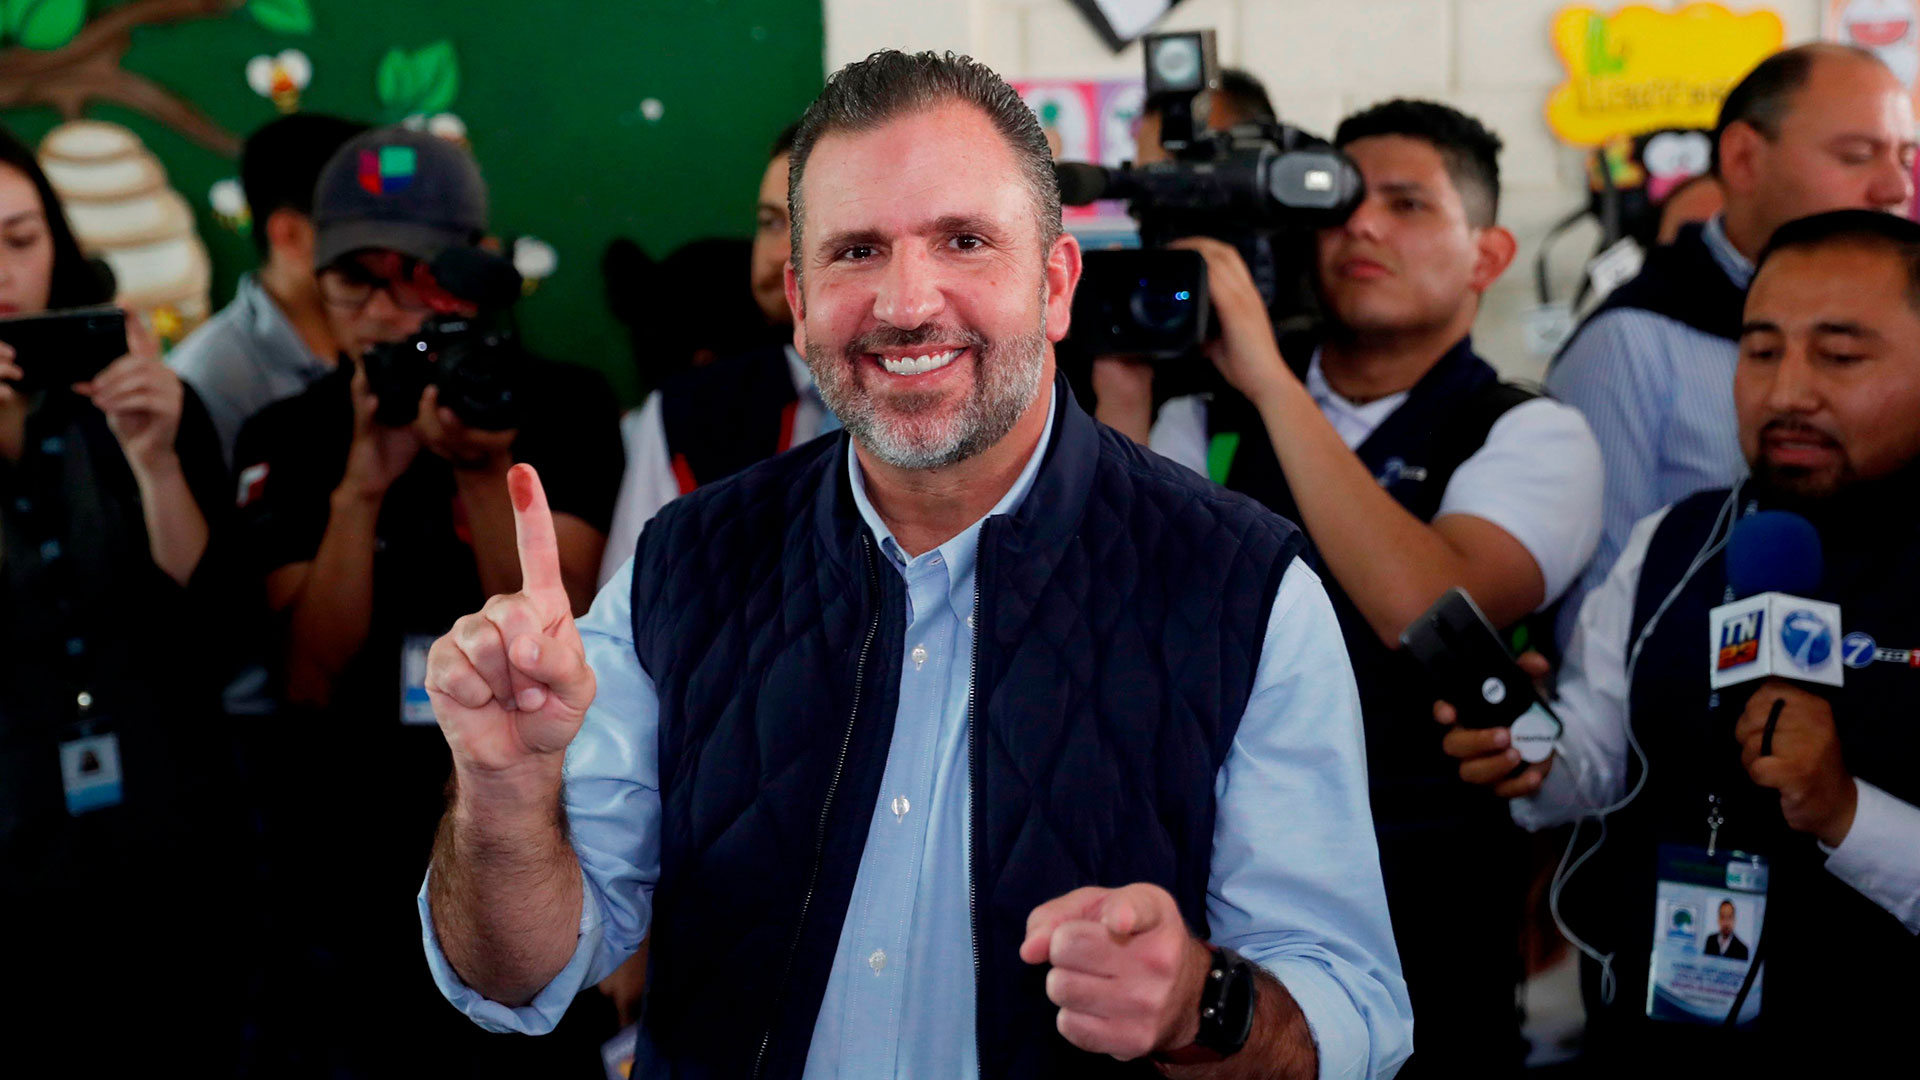 El candidato a la presidencia Roberto Arzú, hijo del ex presidente Álvaro Arzú, también fue excluido de las elecciones en Guatemala (EFE/Esteban Biba)